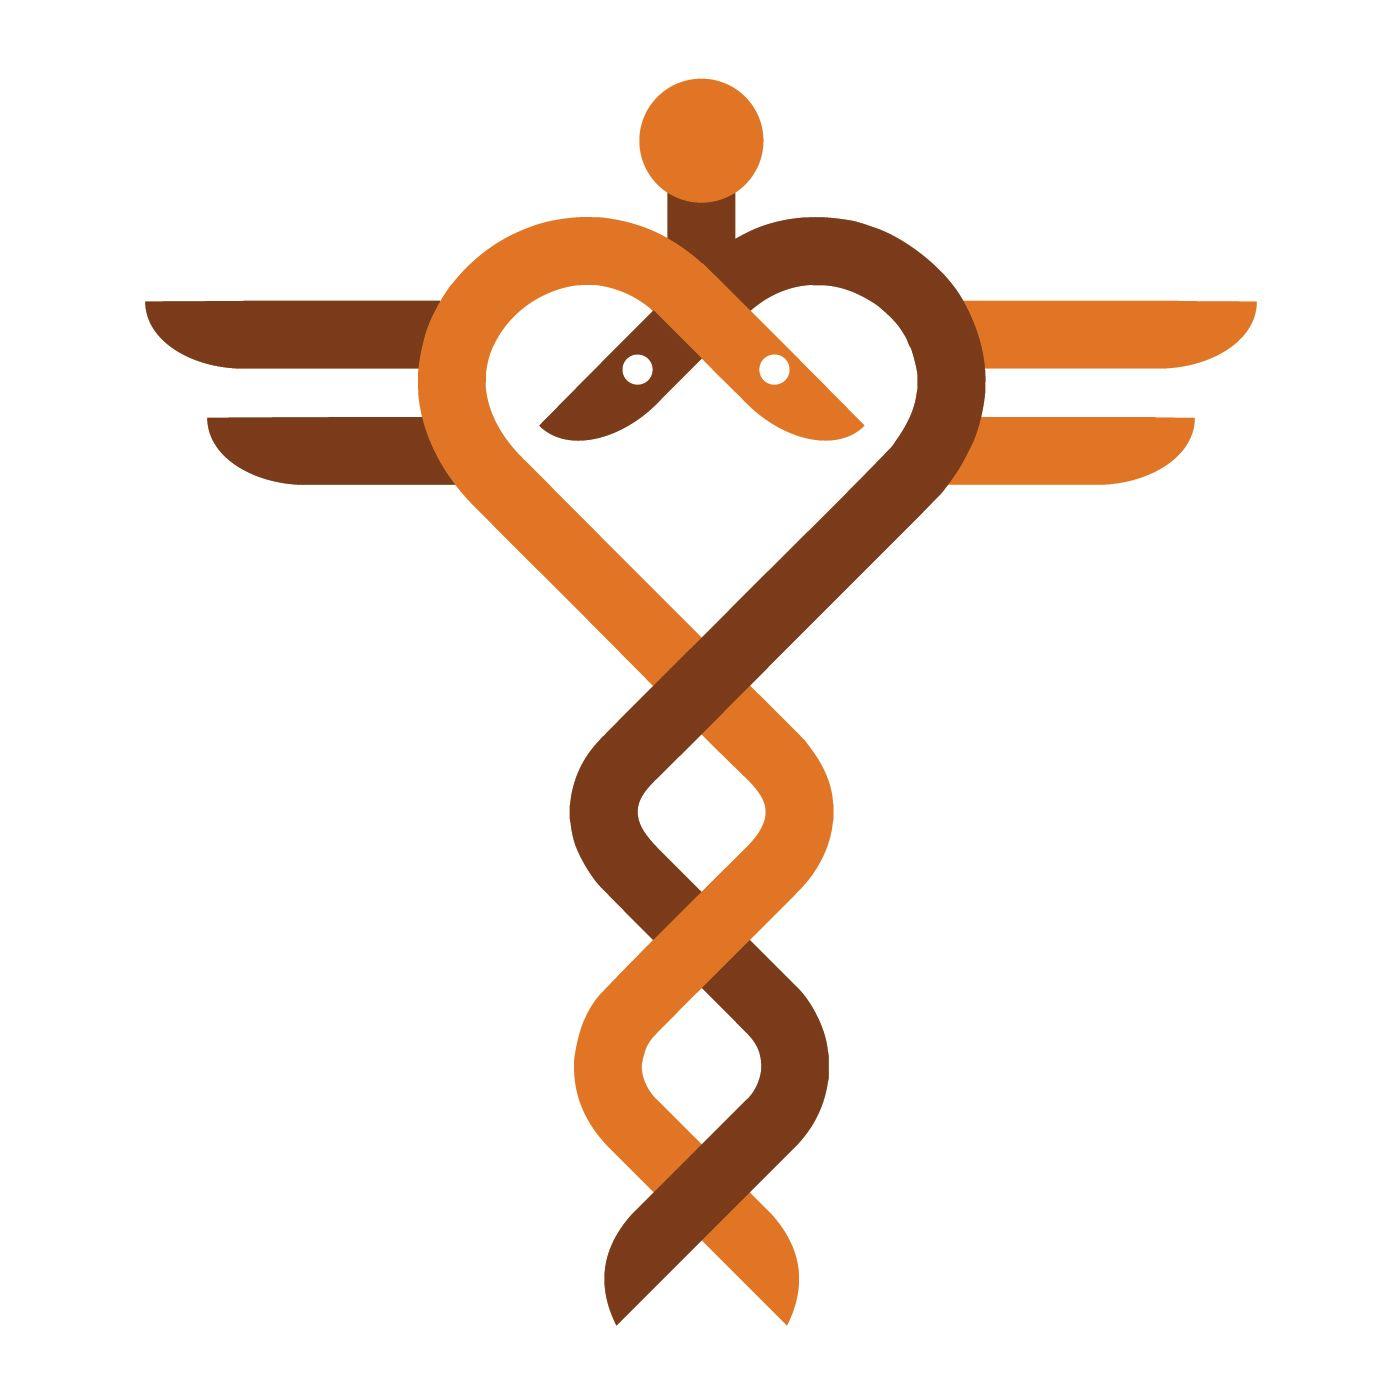 Heart Hospital Logo - Gardner Design - Kansas Heart Hospital logo design. Two stylized ...